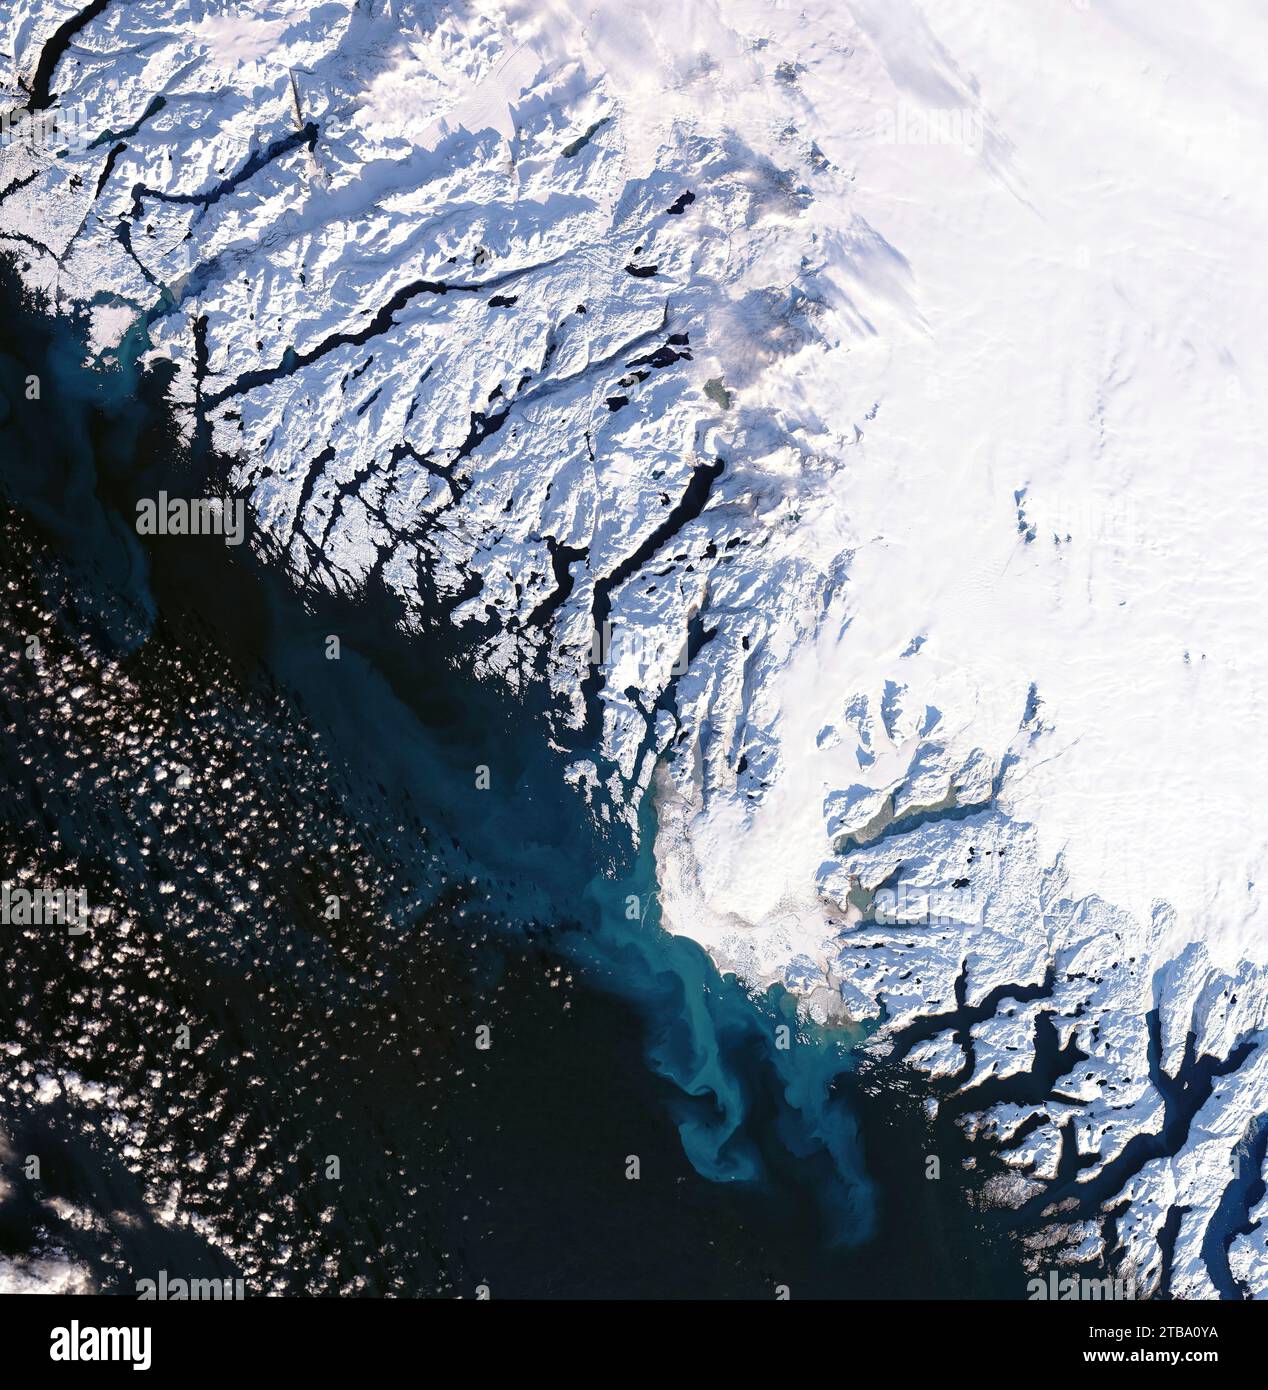 Gletscherschmelzwasser, das von Frederikshaab Isblink abfließt und sich mit dem dunklen Wasser des Labrador-Meeres vermischt. Stockfoto